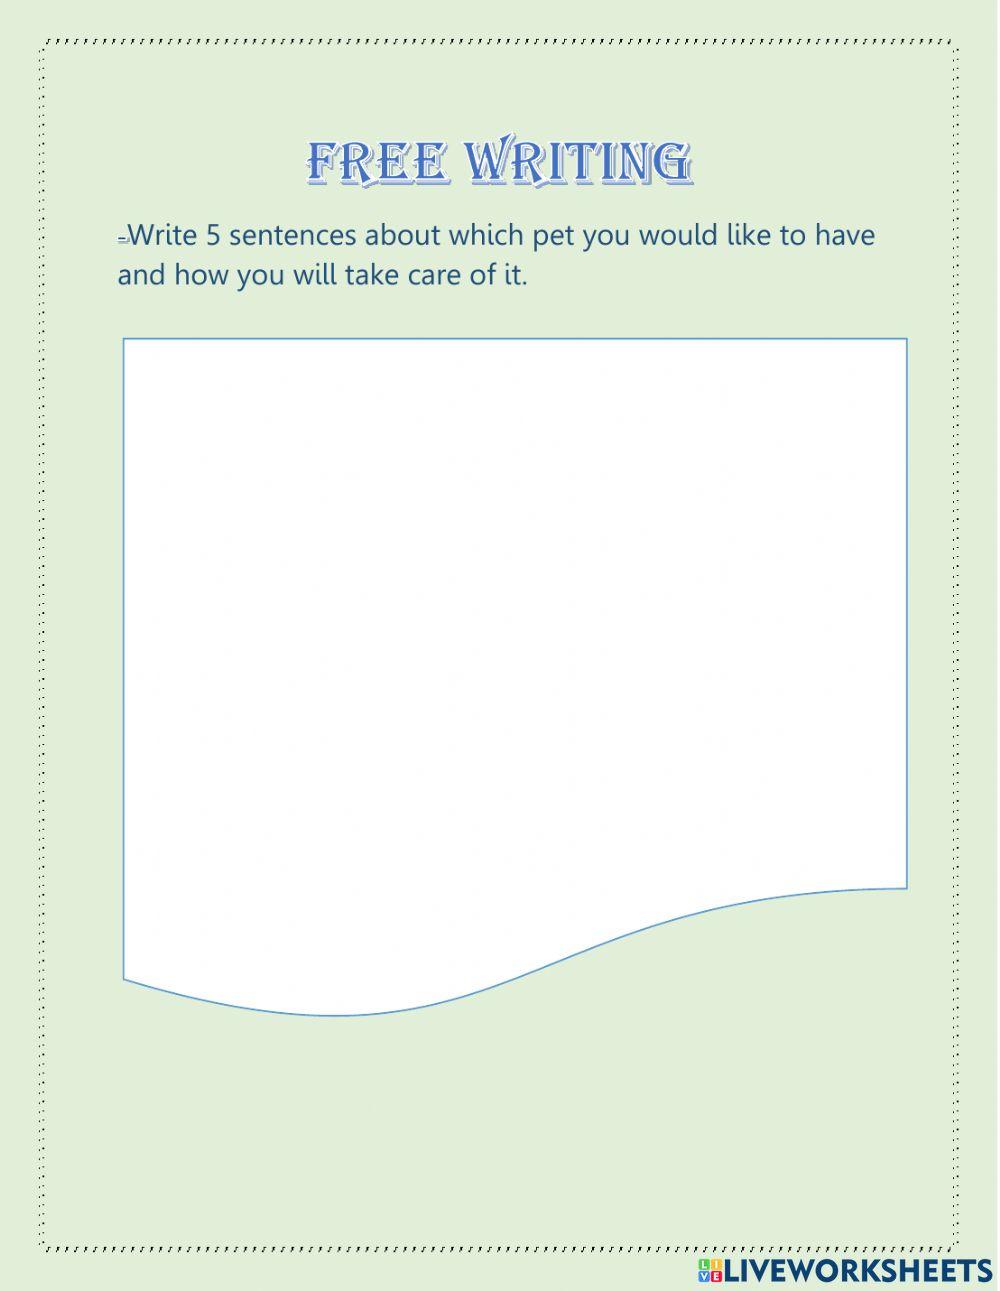 Free writing 2